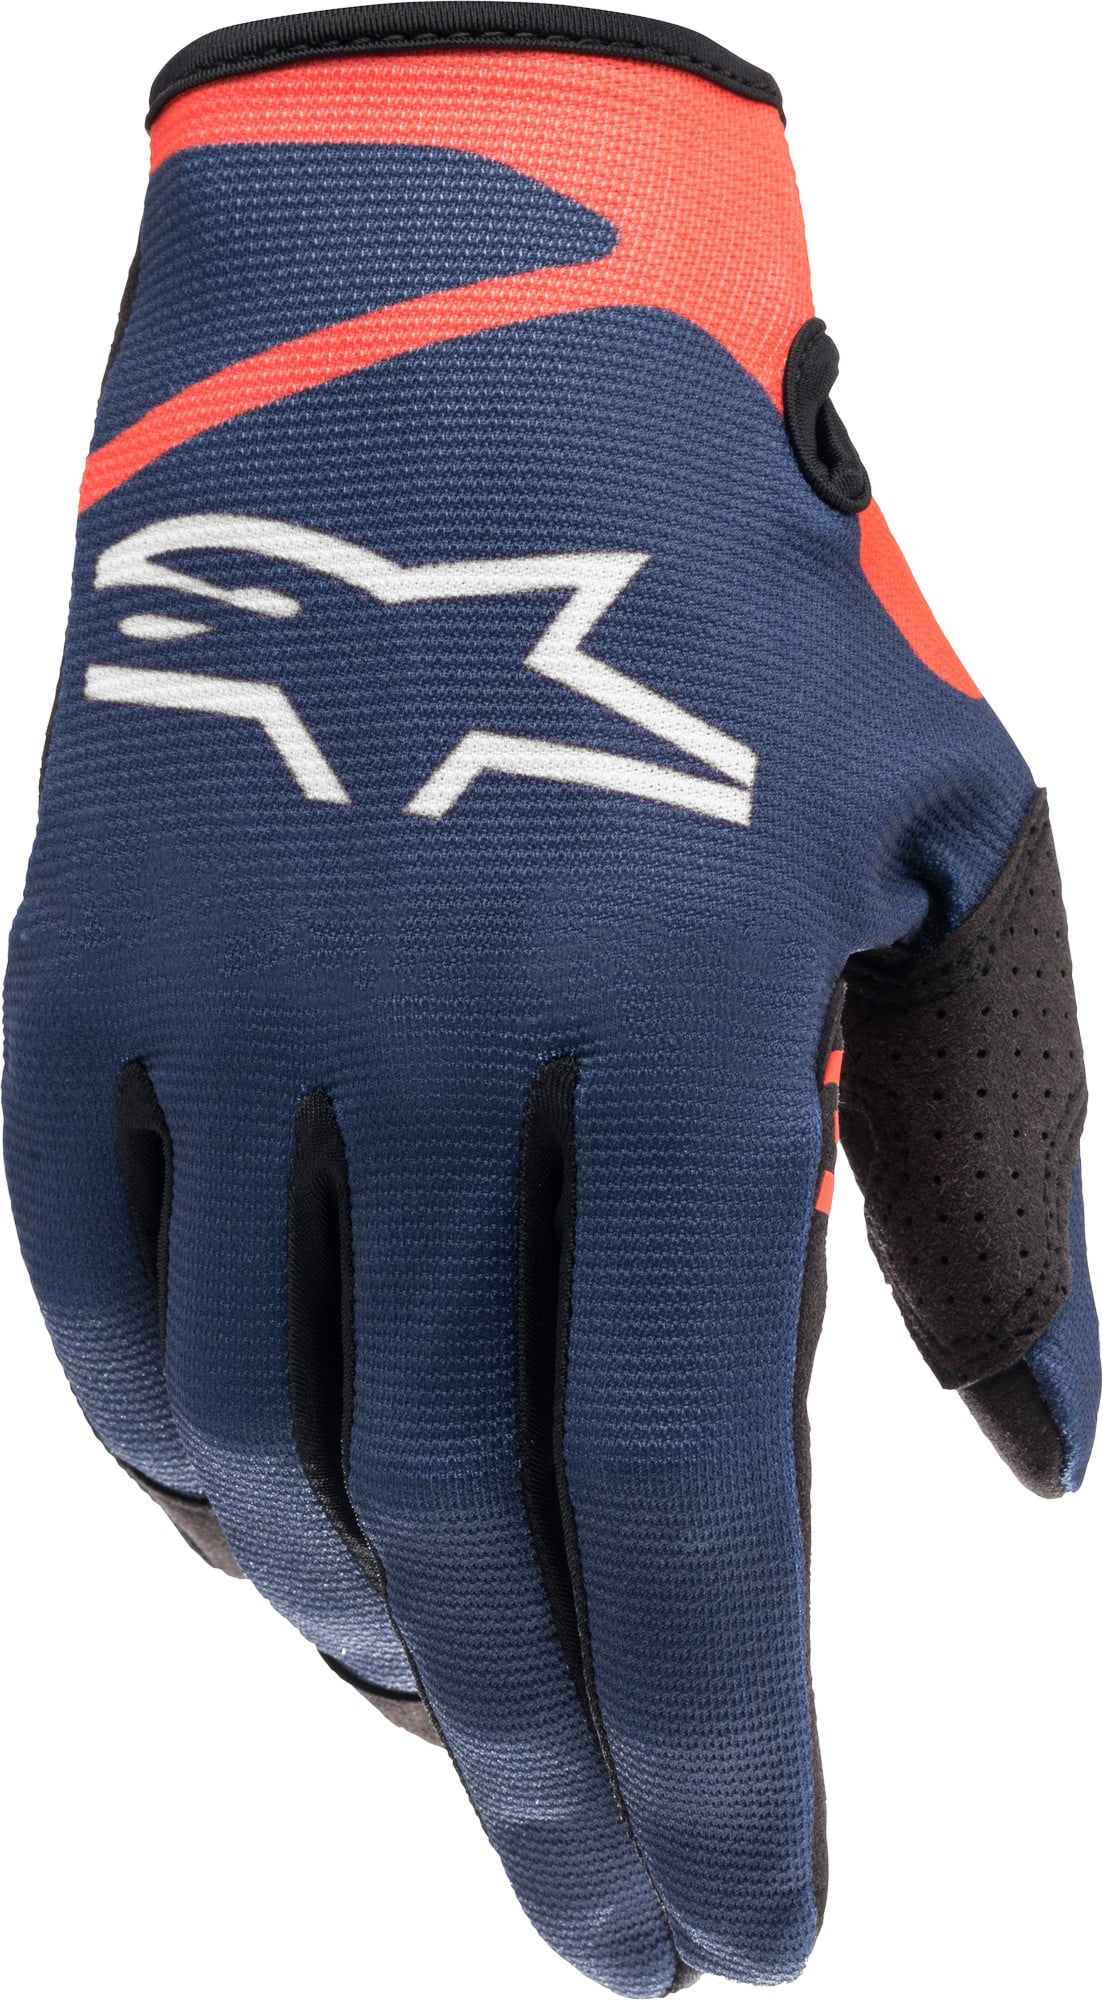 Alpinestars Radar Tracker Gloves Blu/Cyn/Flo Motocross Mx Quad Atv Off Road 